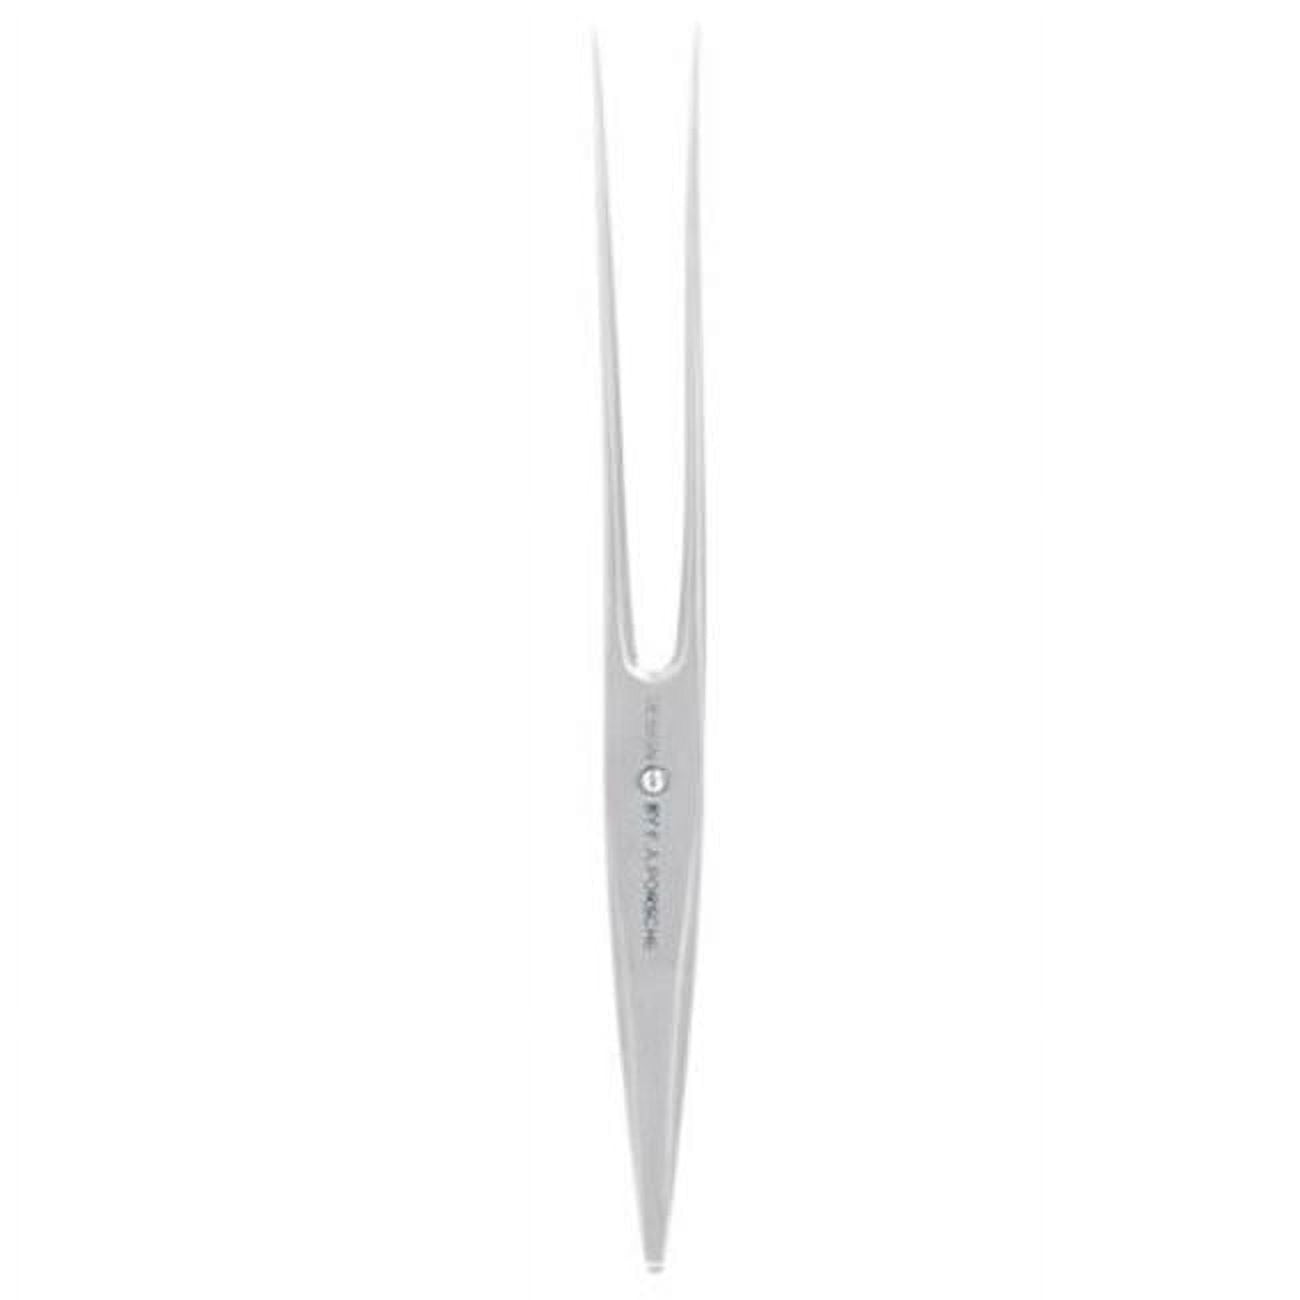 DOLLAR DAYS Type 301 Carving Fork Knife - Metallic